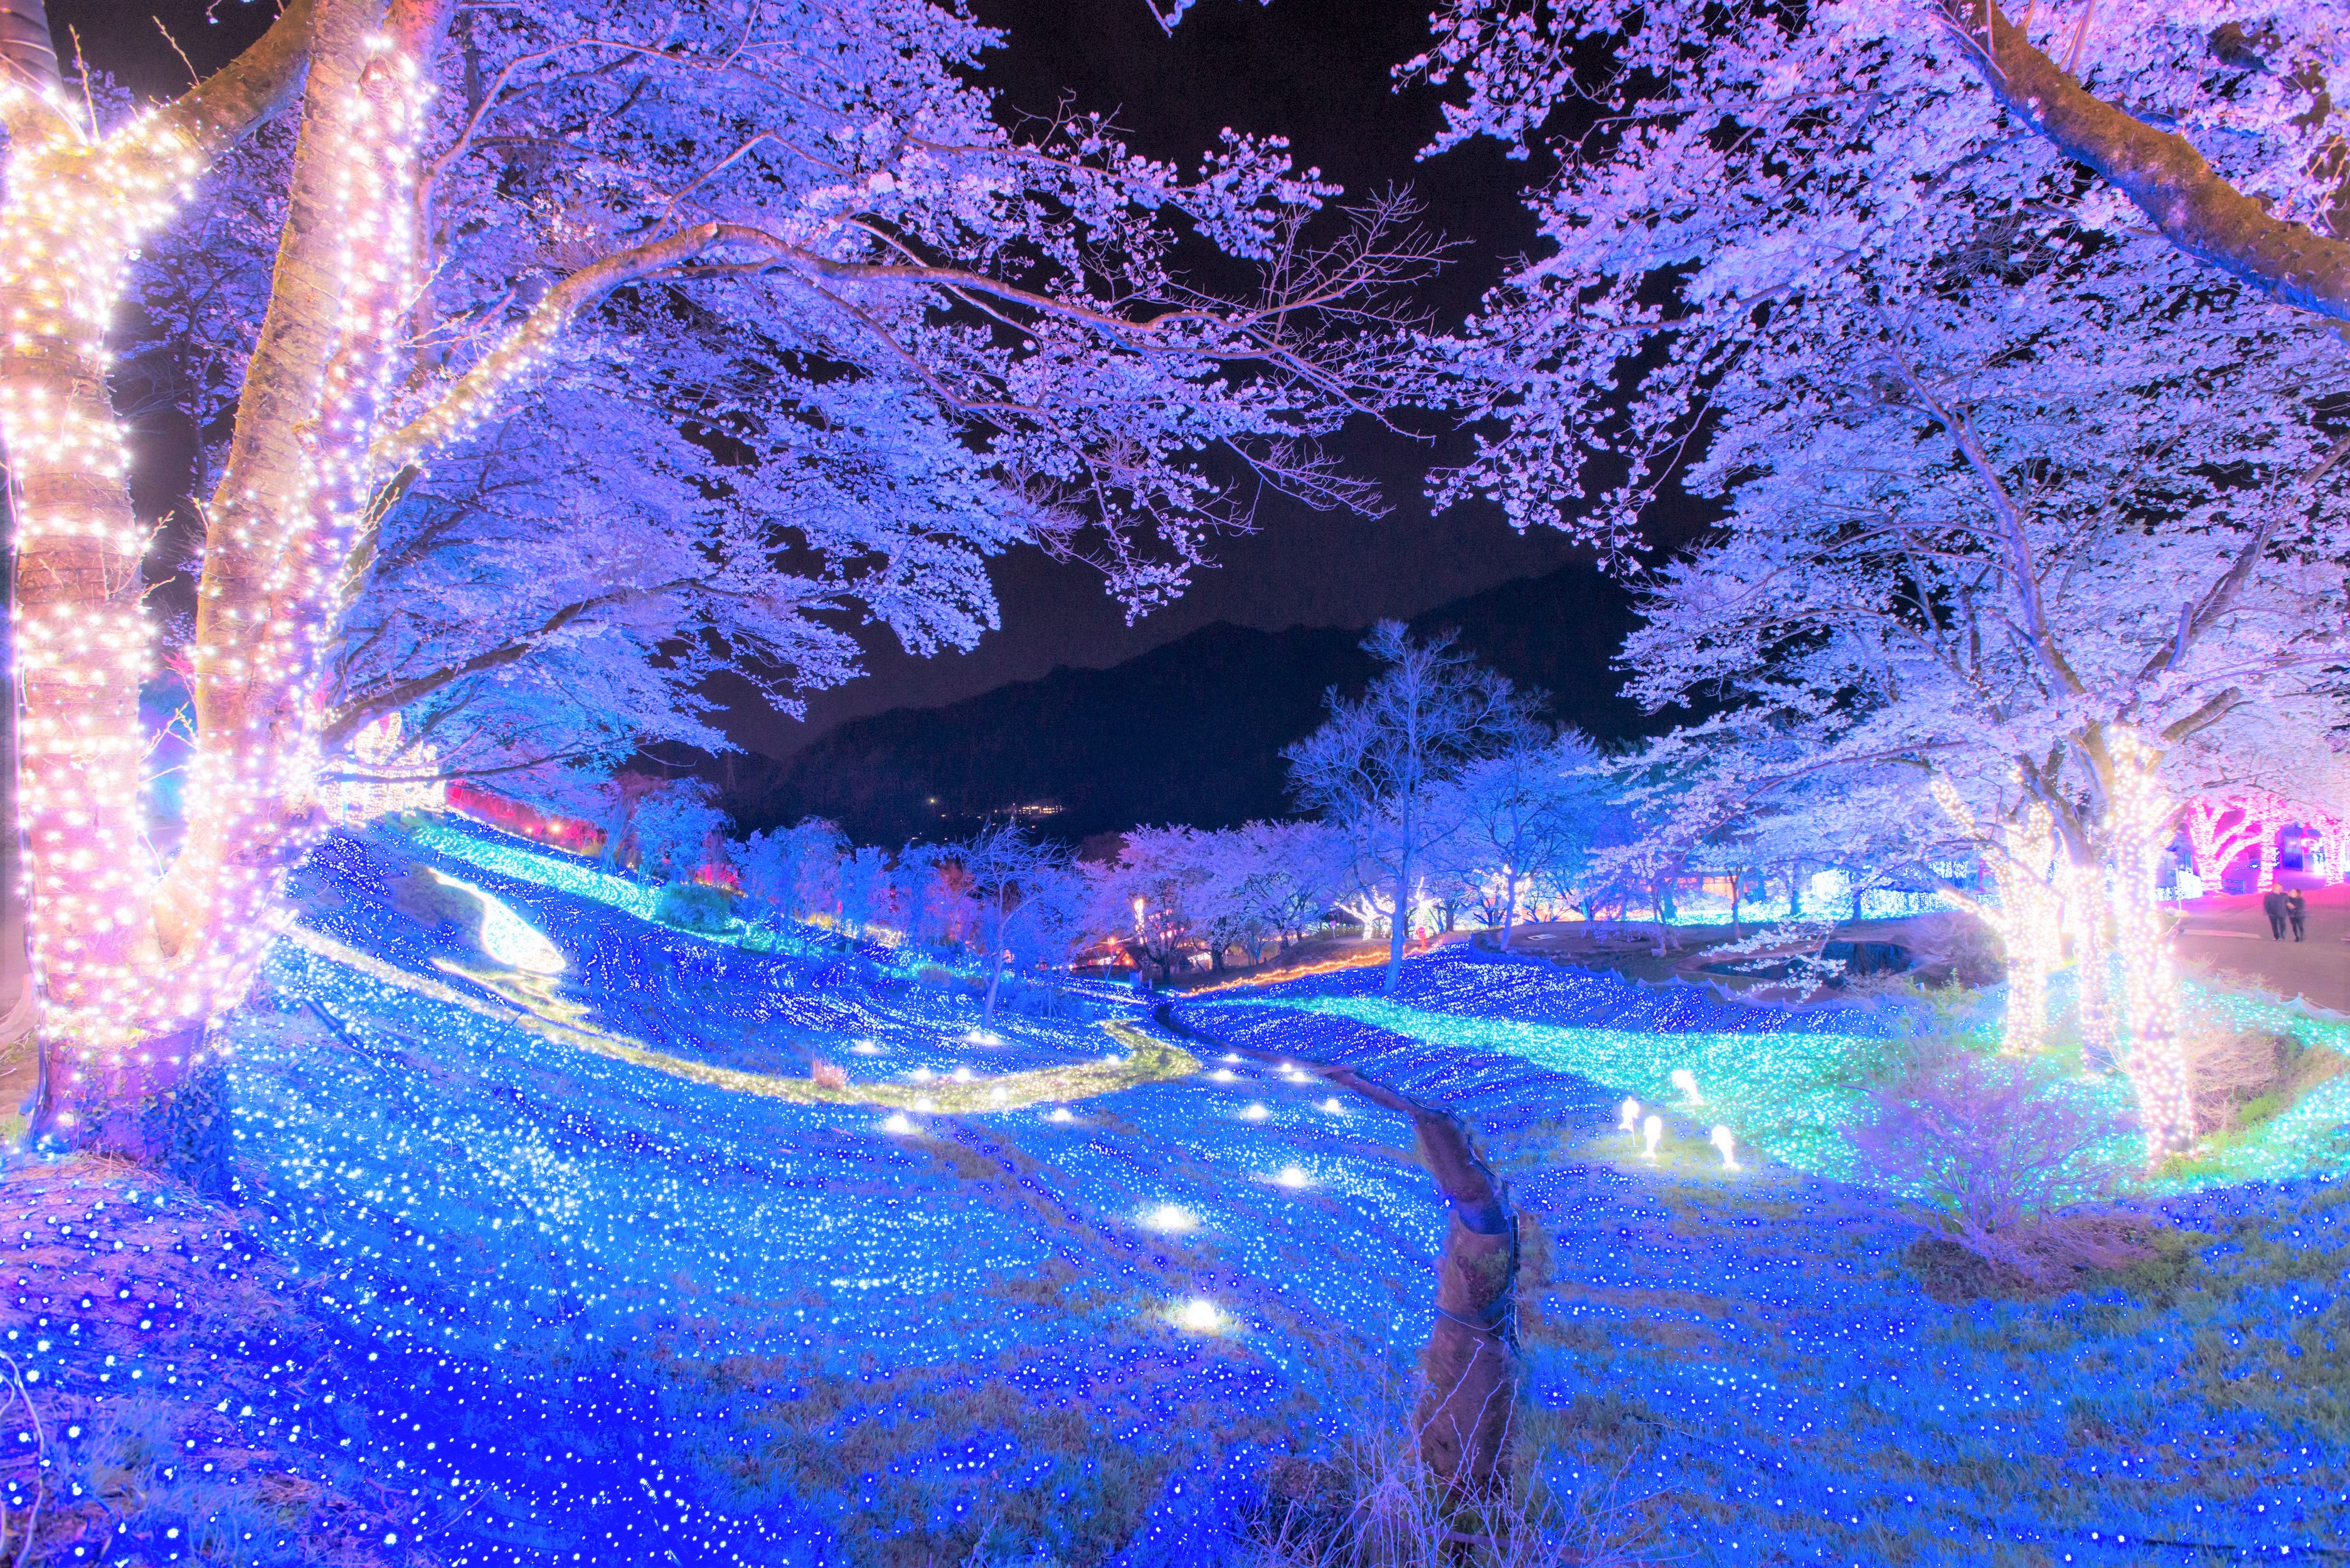 関東最大級 2 500本が昼夜咲き誇る 桜の名所 さがみ湖桜まつり 3月21日より開催 富士急行のプレスリリース